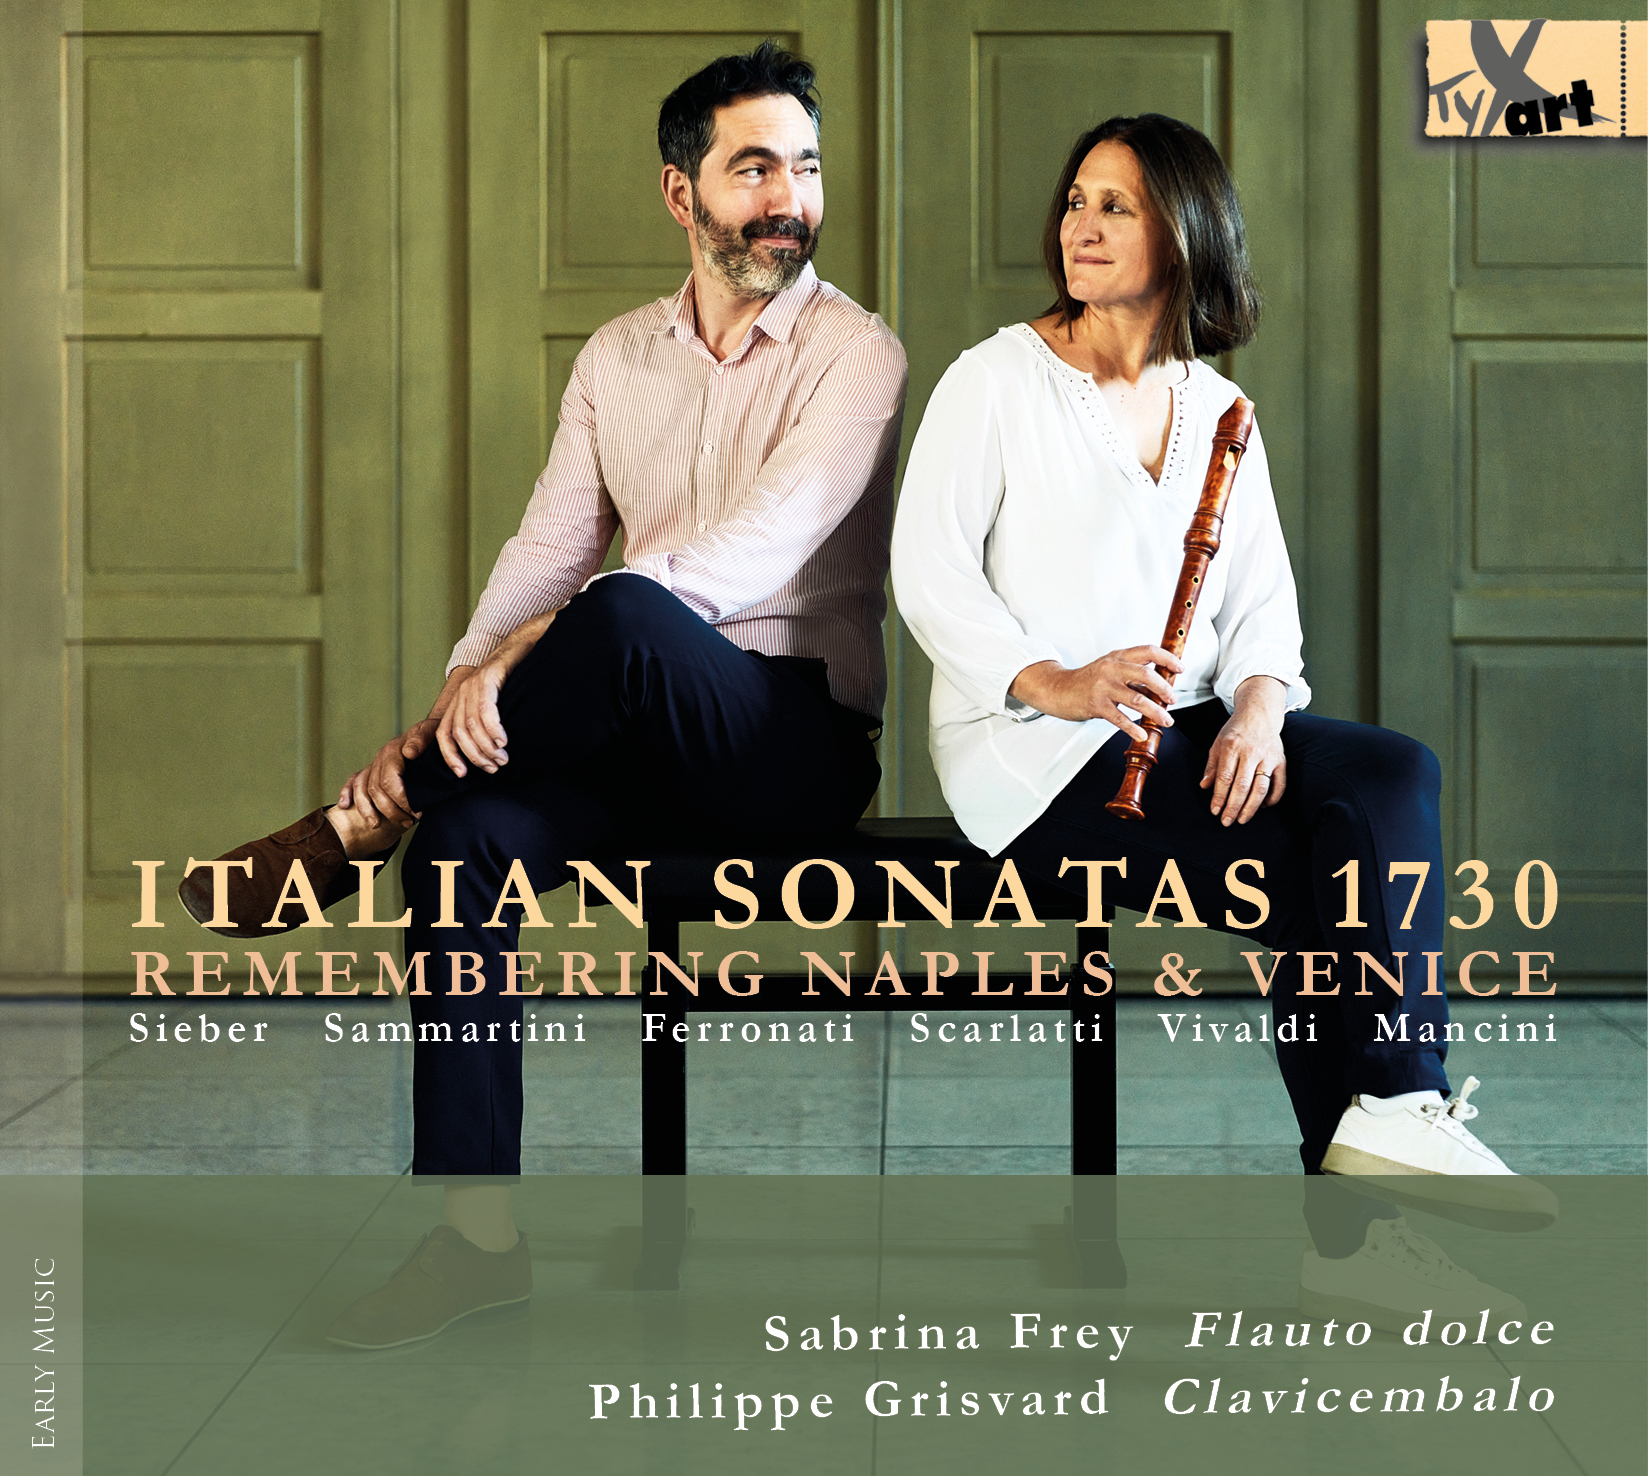 Italian Sonatas 1730 - Werke für Flöte und Cembalo - Frey & Grisvard